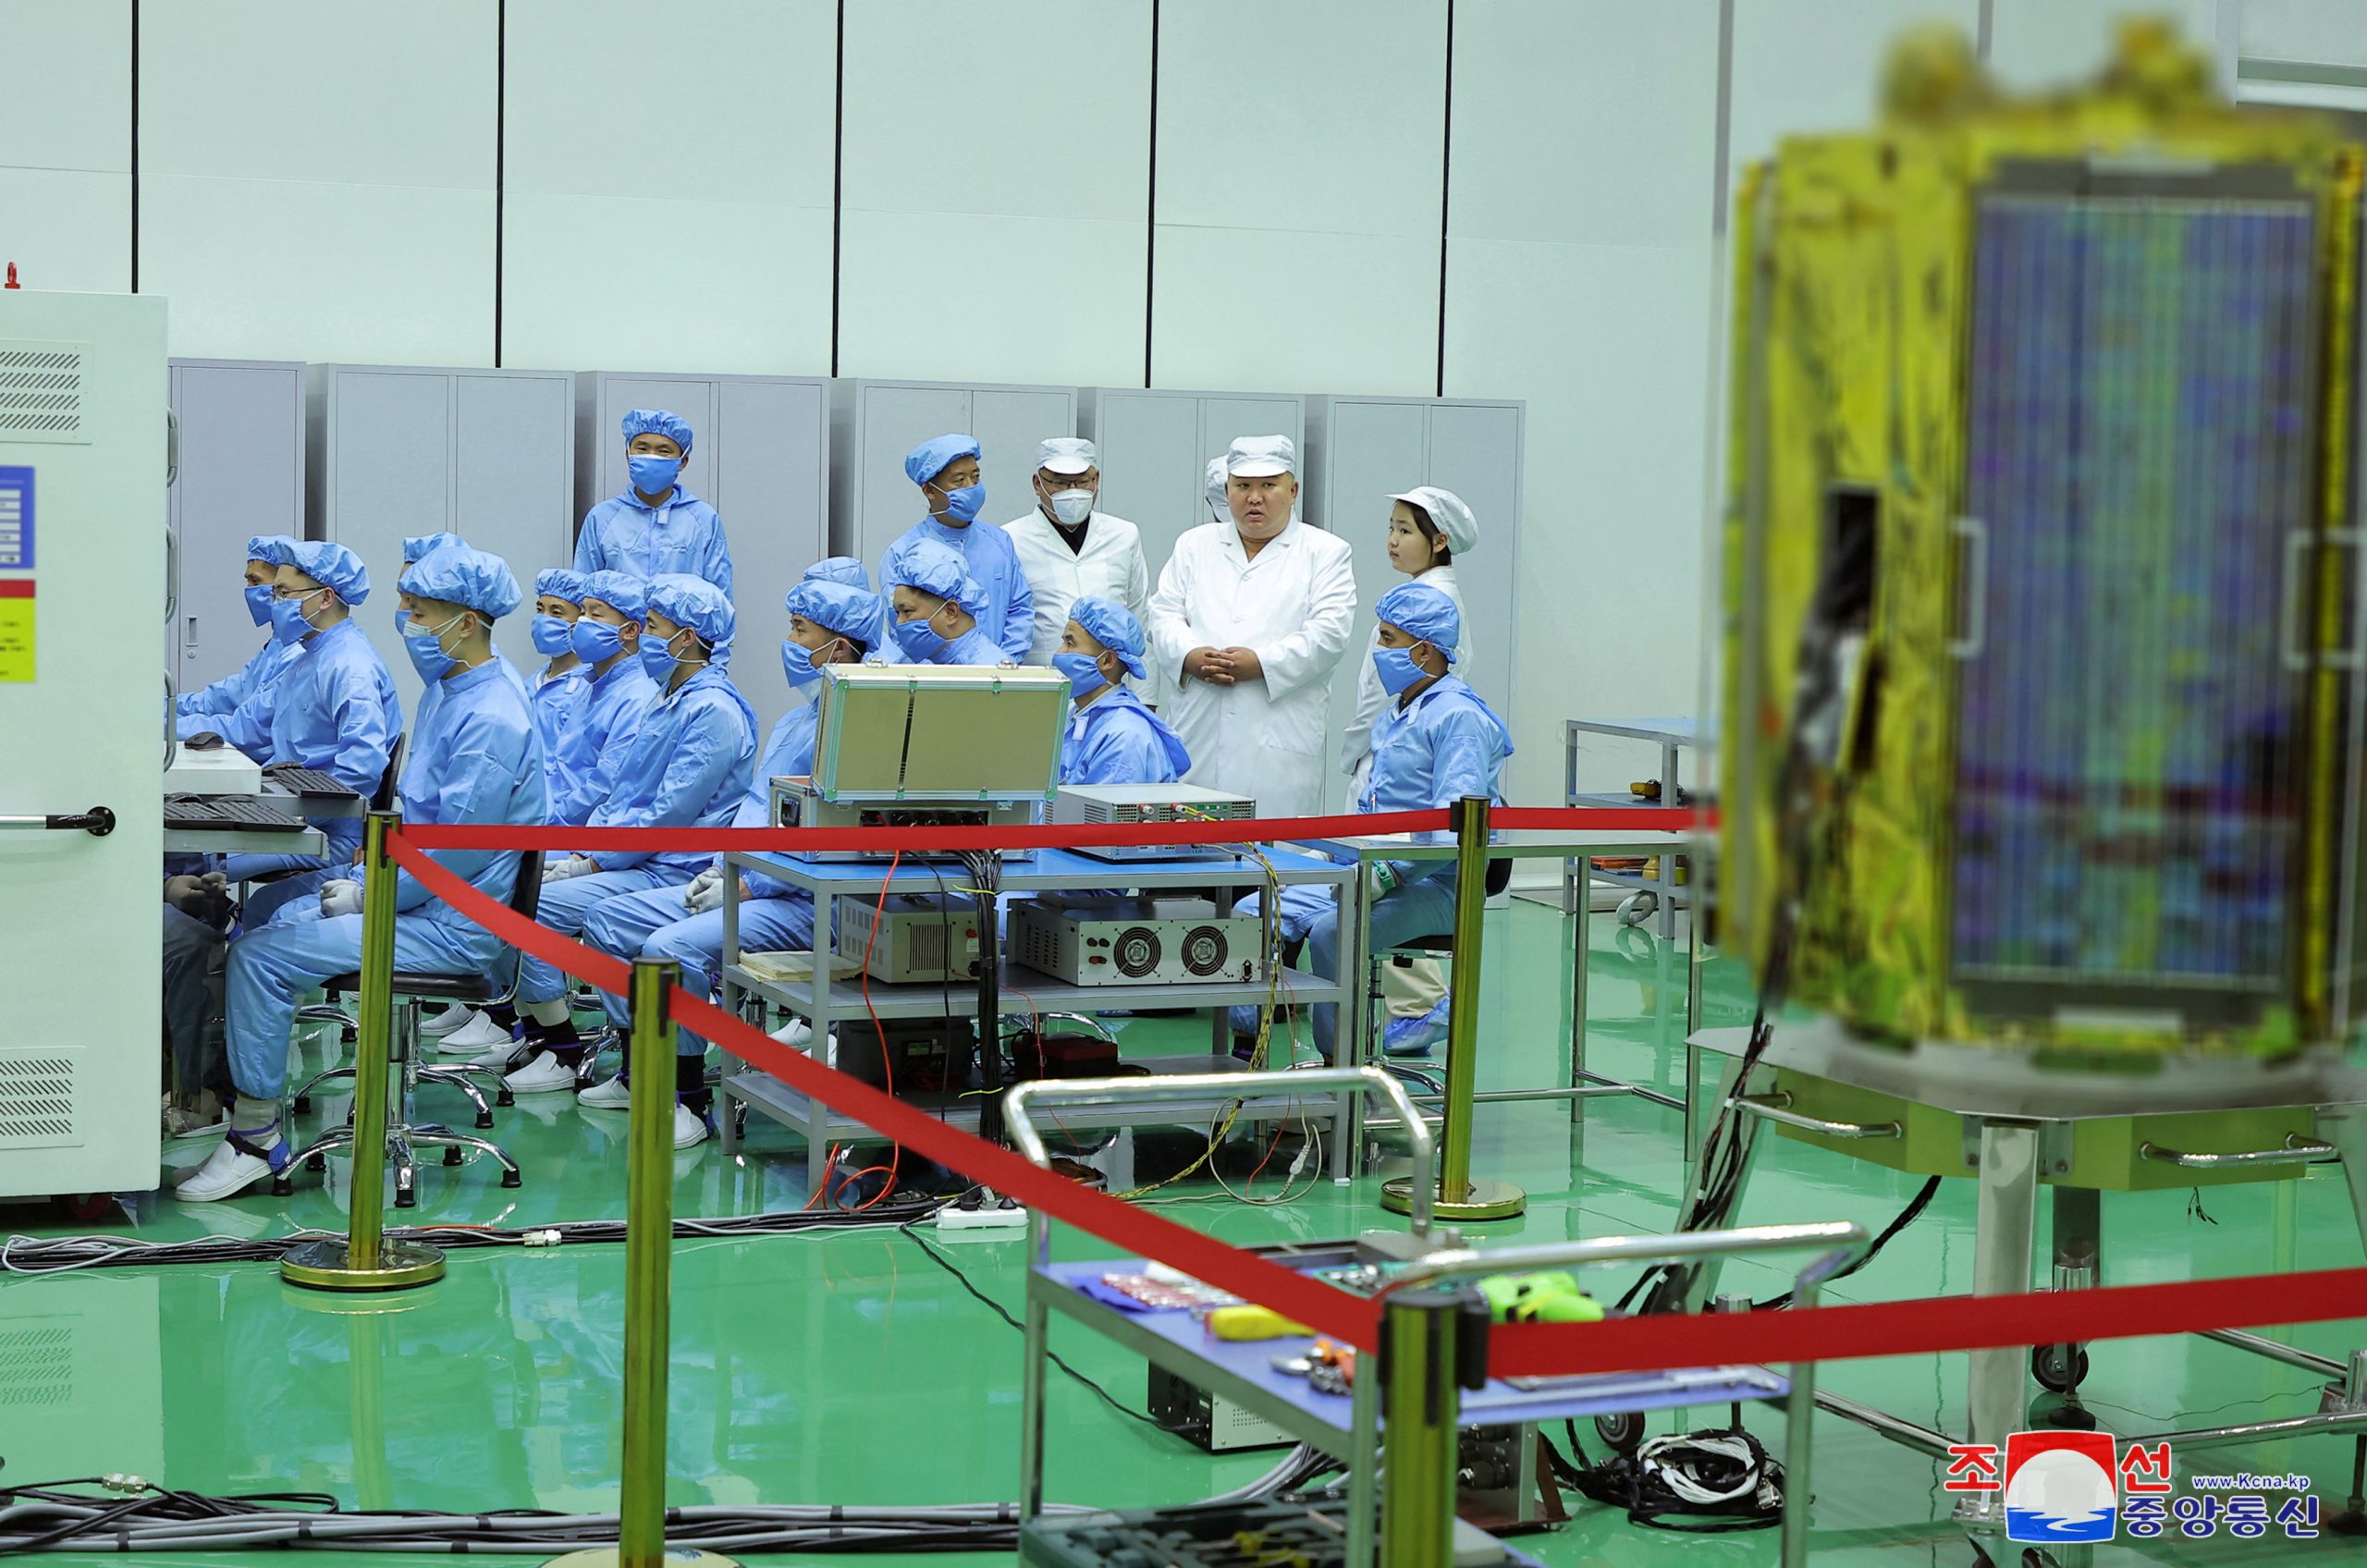 Il satellite Mallingyong-1 prima di essere installato sul vettore che lo ha portato in orbita.